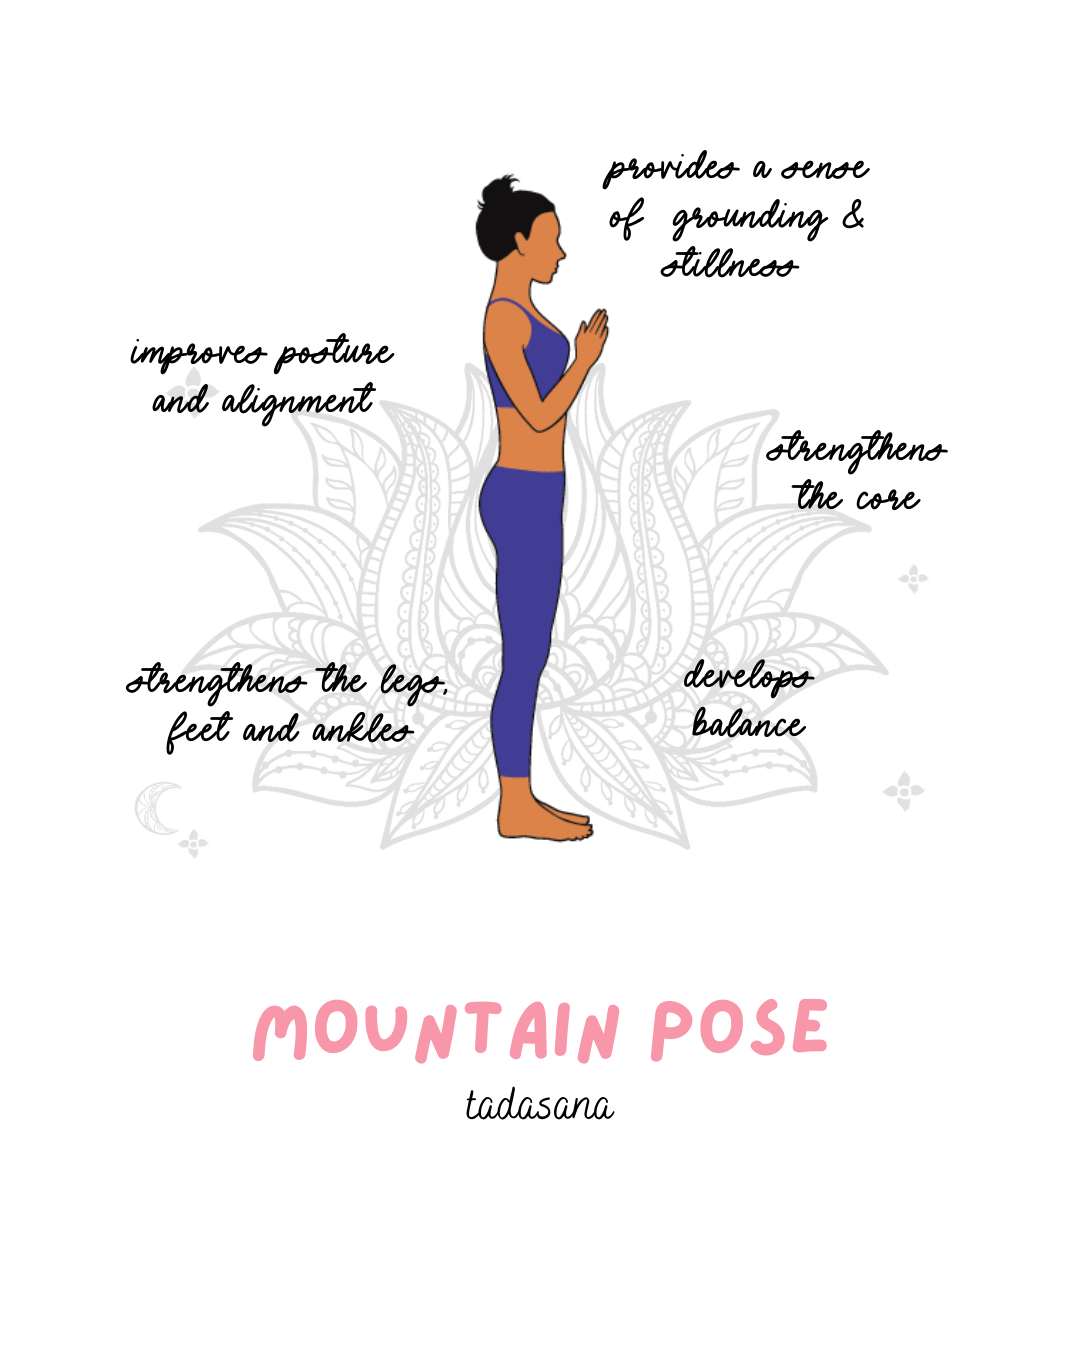 mountain pose yoga